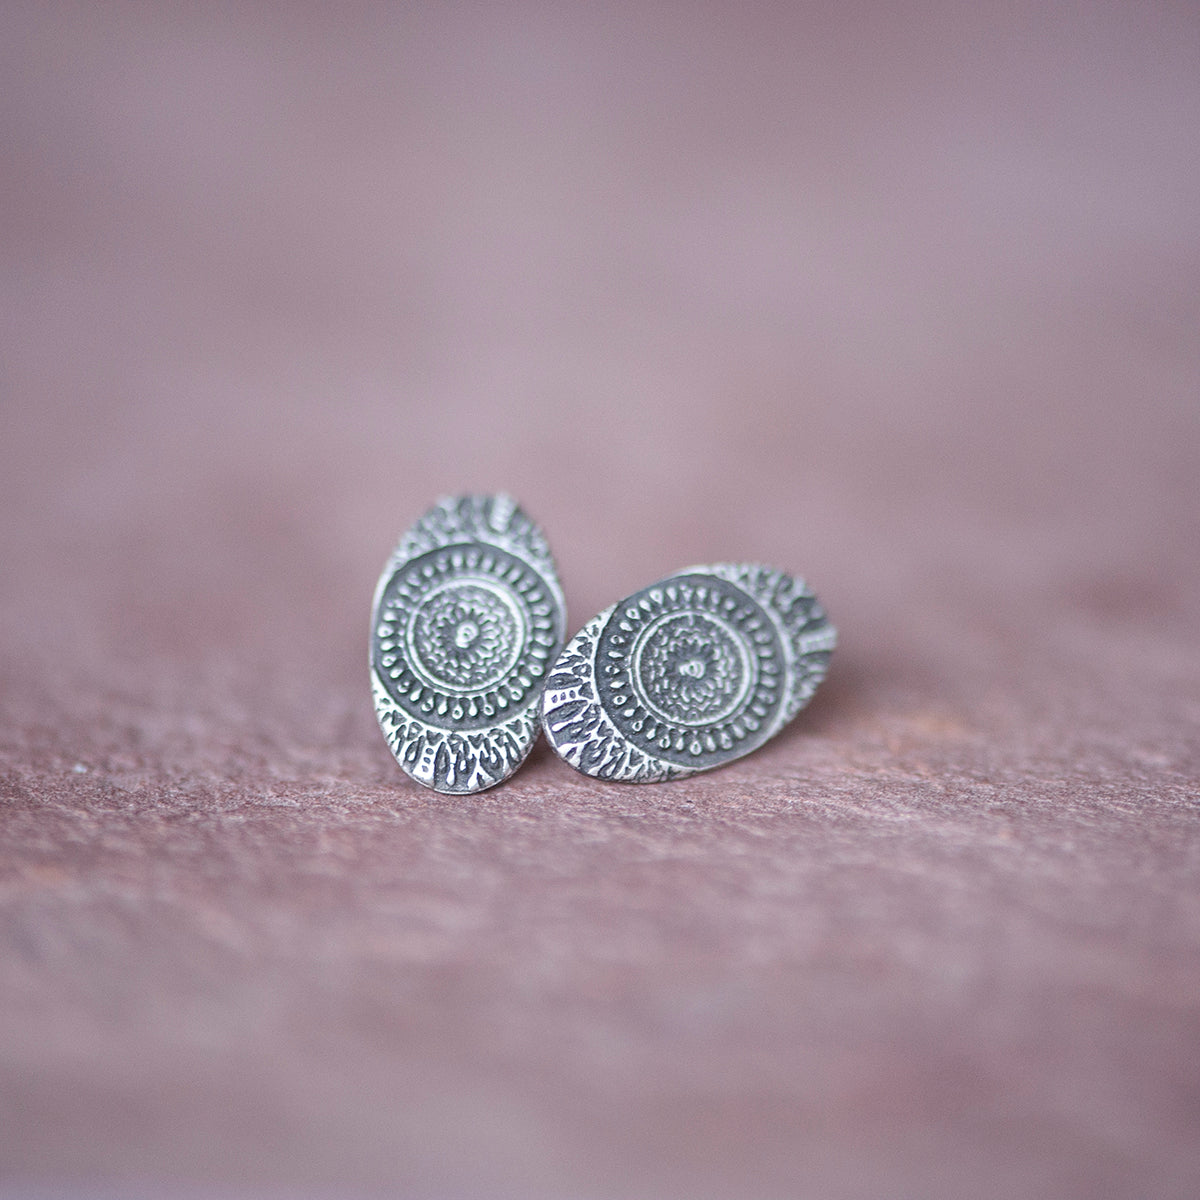 Delicate Silver Moroccan Sundial Stud Earrings from Jester - Jester Swink